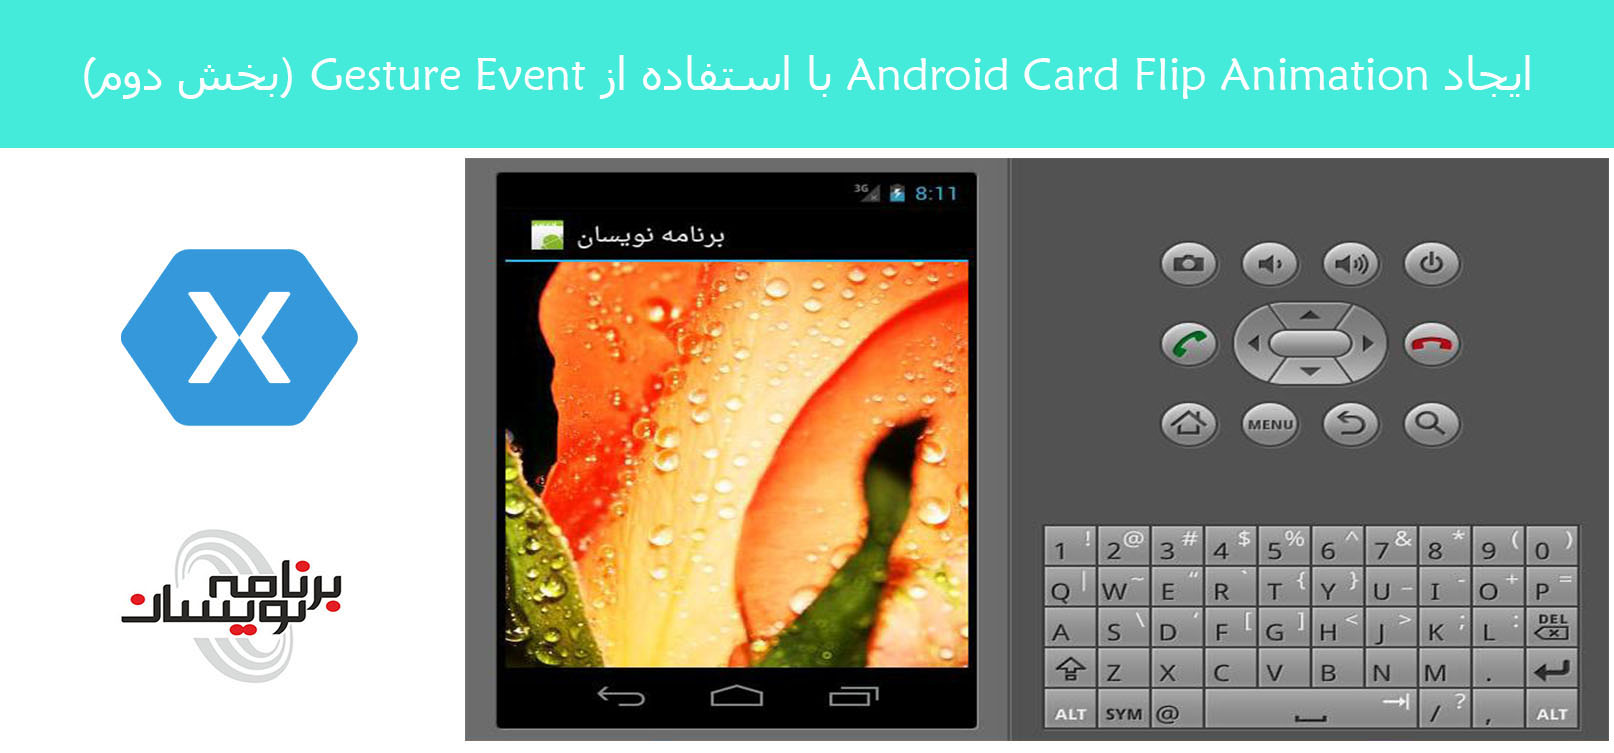 ایجاد Android Card Flip Animation با استفاده از Gesture Event (بخش دوم)